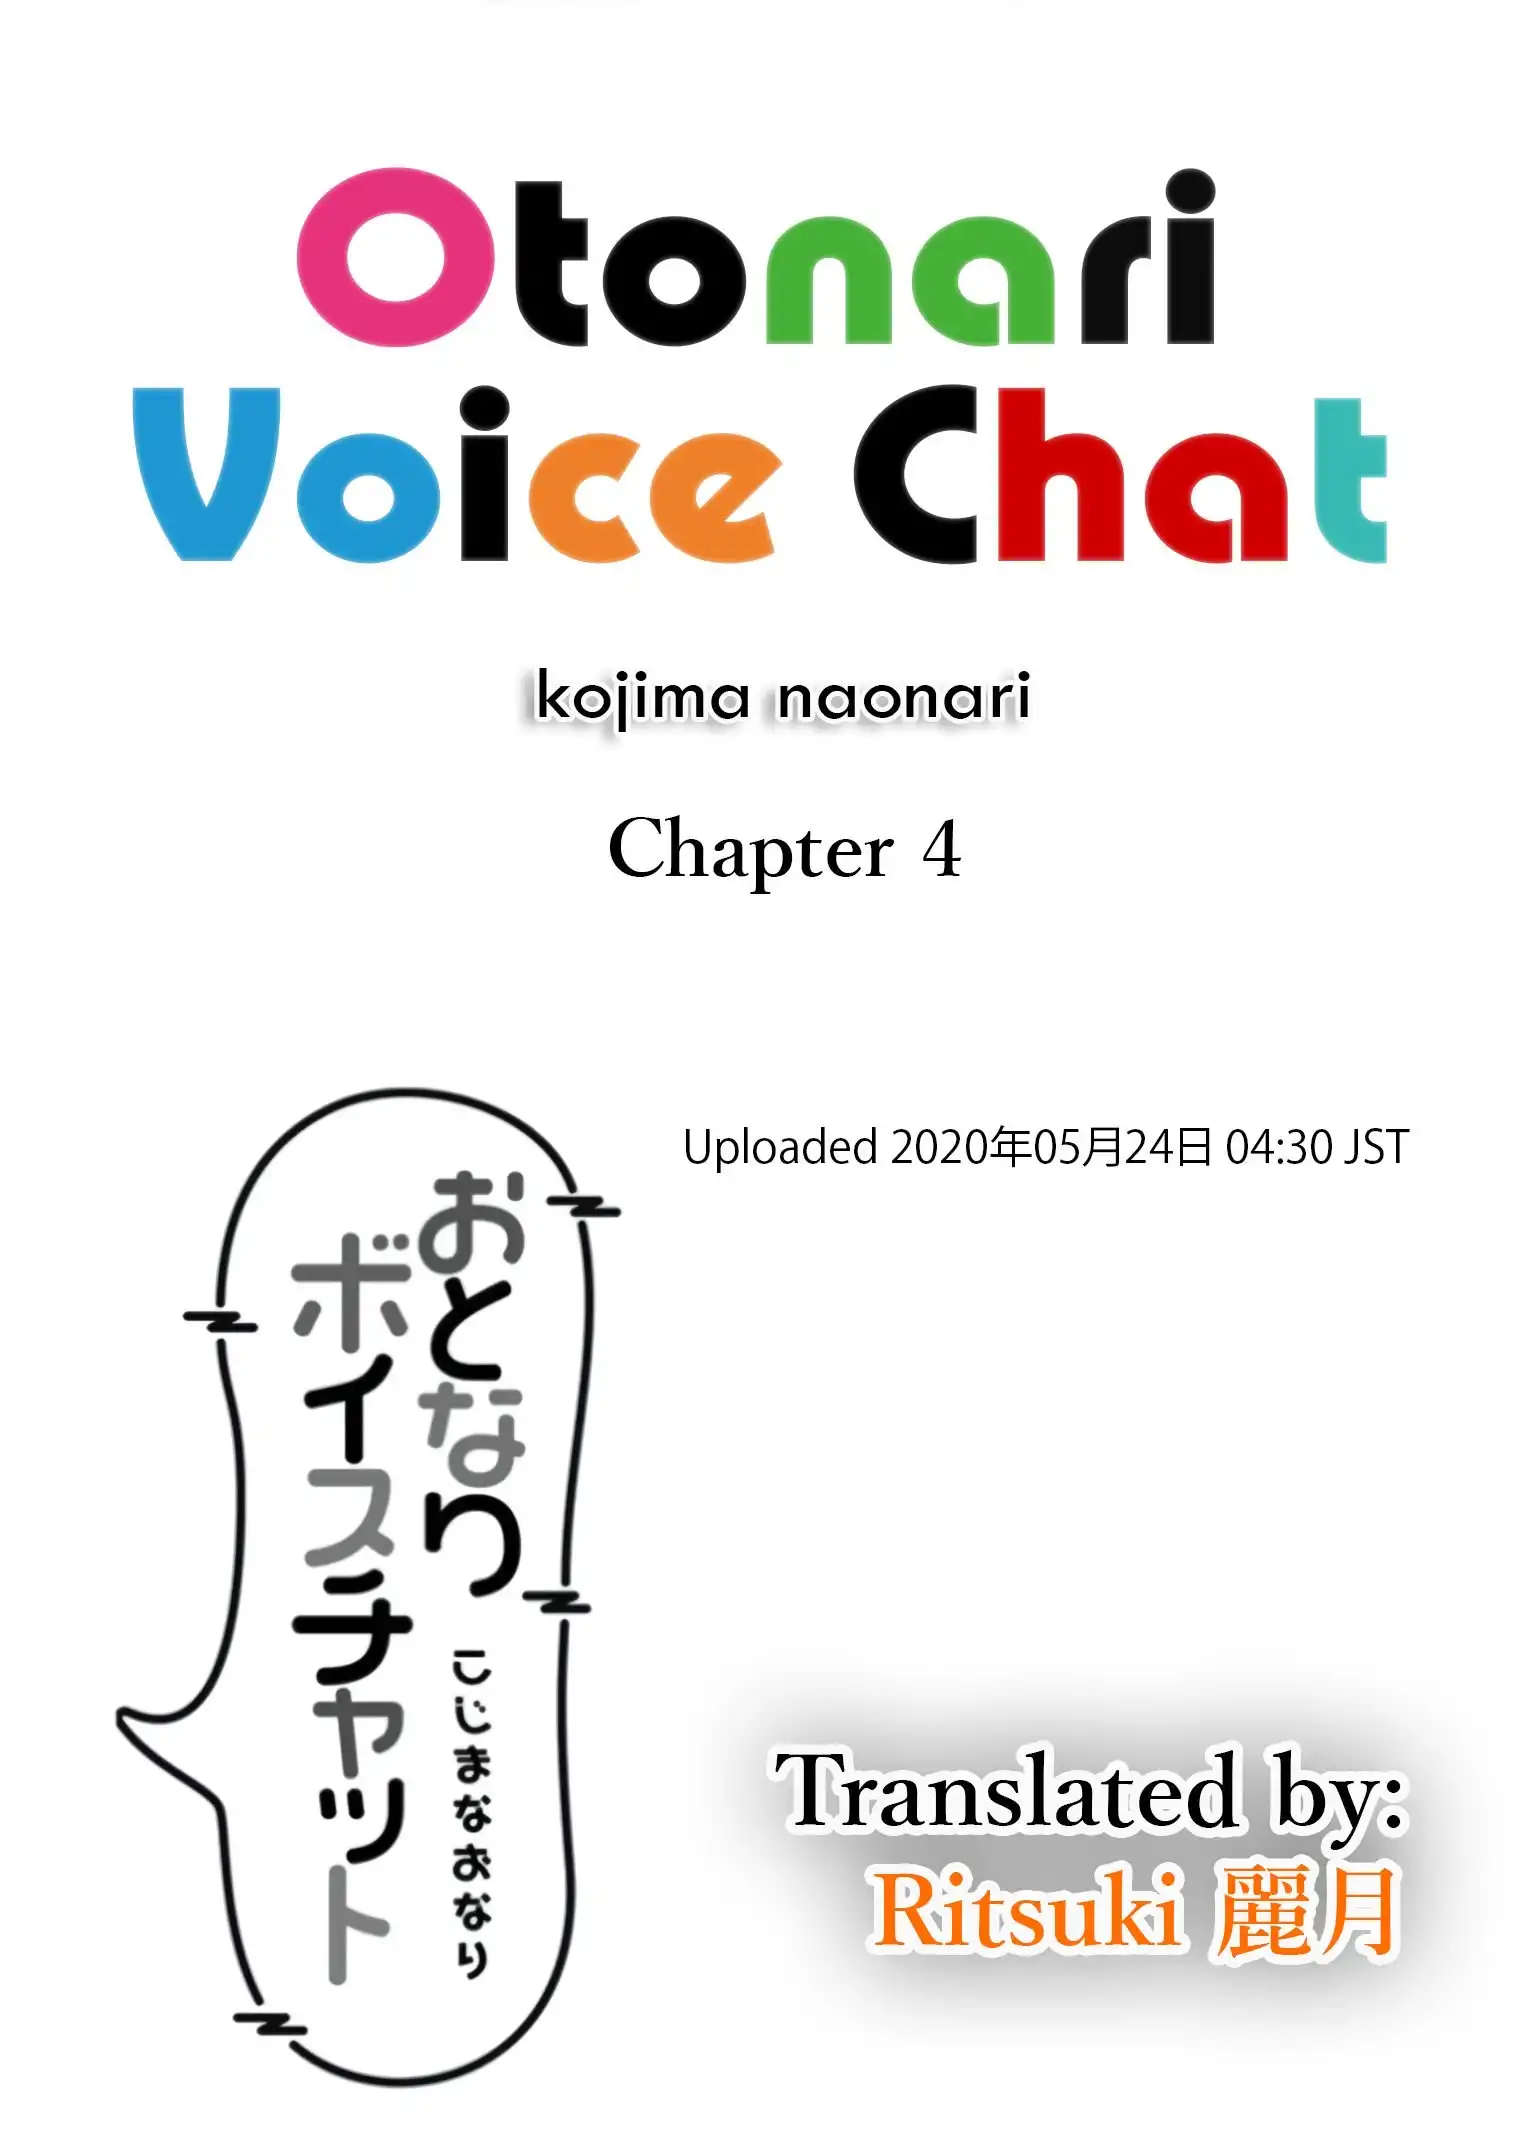 Otonari Voice Chat Chapter 4